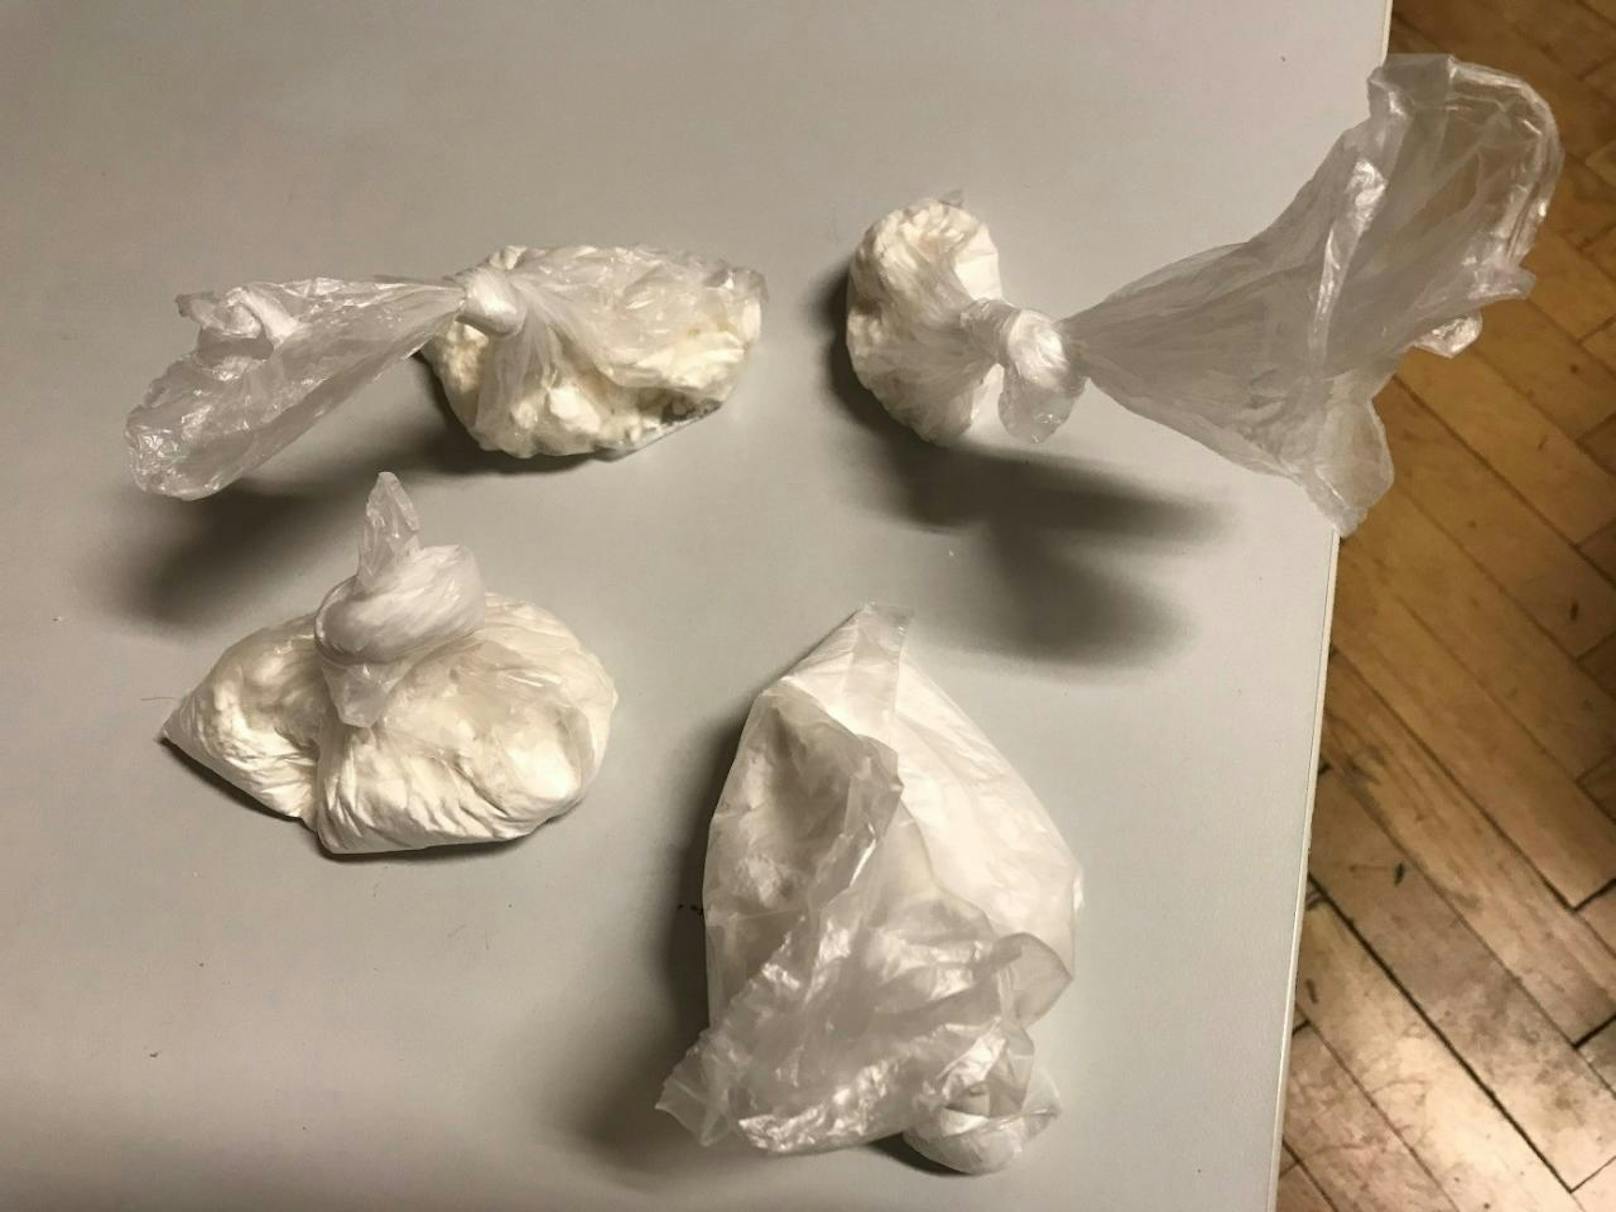 Nach längerer Ermittlungsarbeit konnte ein 48-Jähriger festgenommen werden, nachdem er eine größere Menge an Kokain für 7.500 Euro verkauft hatte.